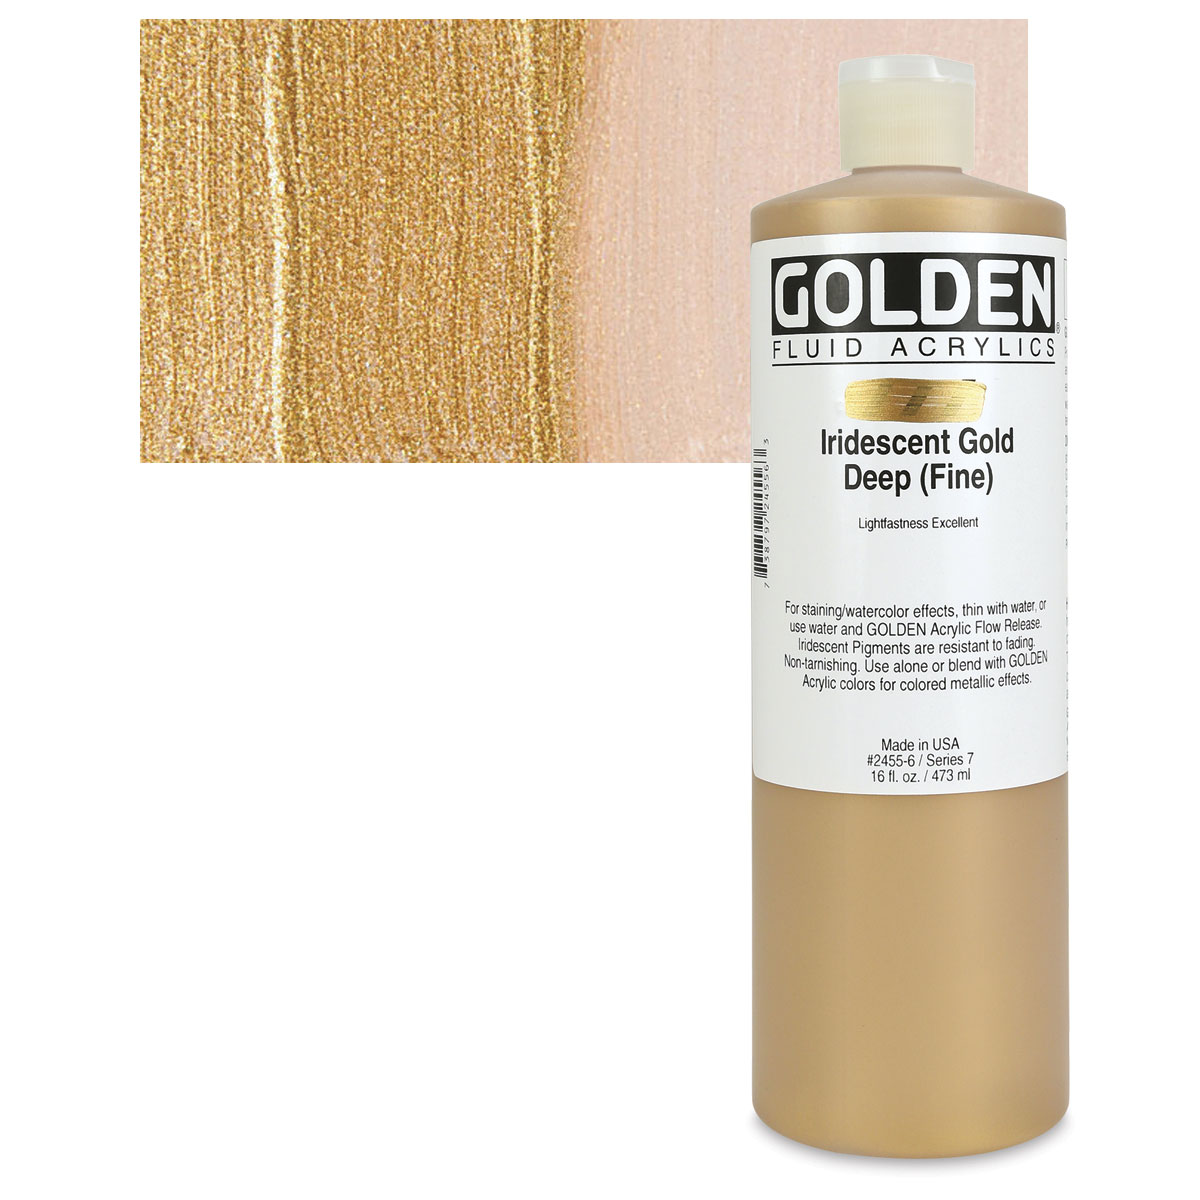 Golden : High Flow : Acrylic Paint : 30ml : Iridescent Gold (Fine